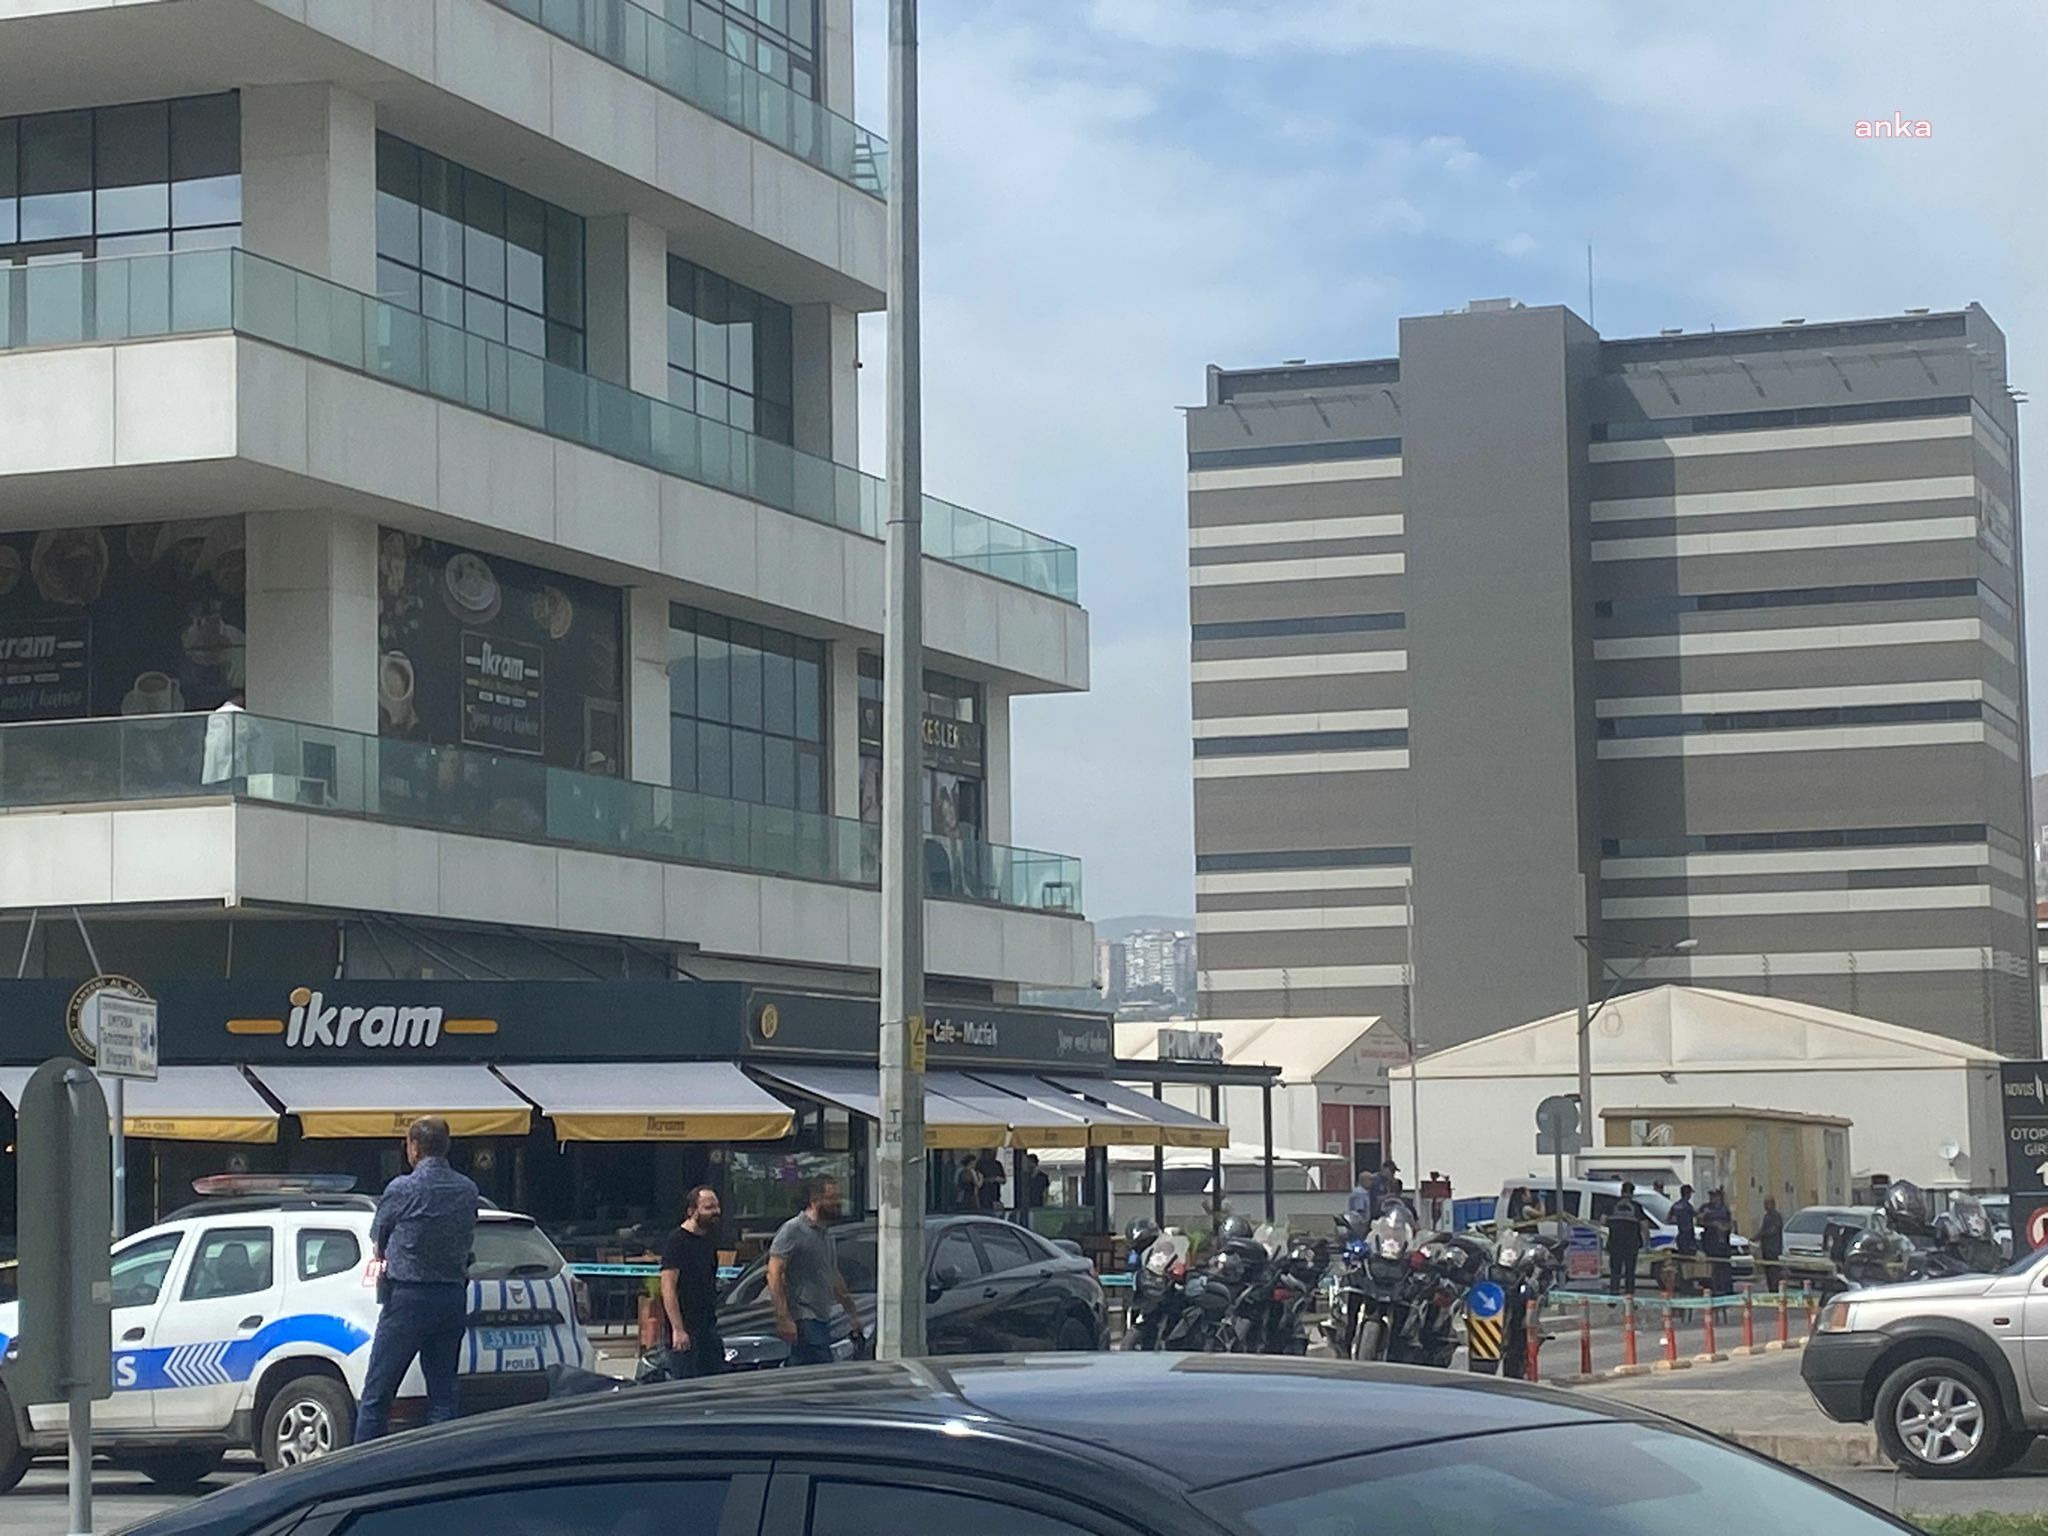 İzmir'de adliye önünde silahlı çatışma: 1 ölü, 3 yaralı